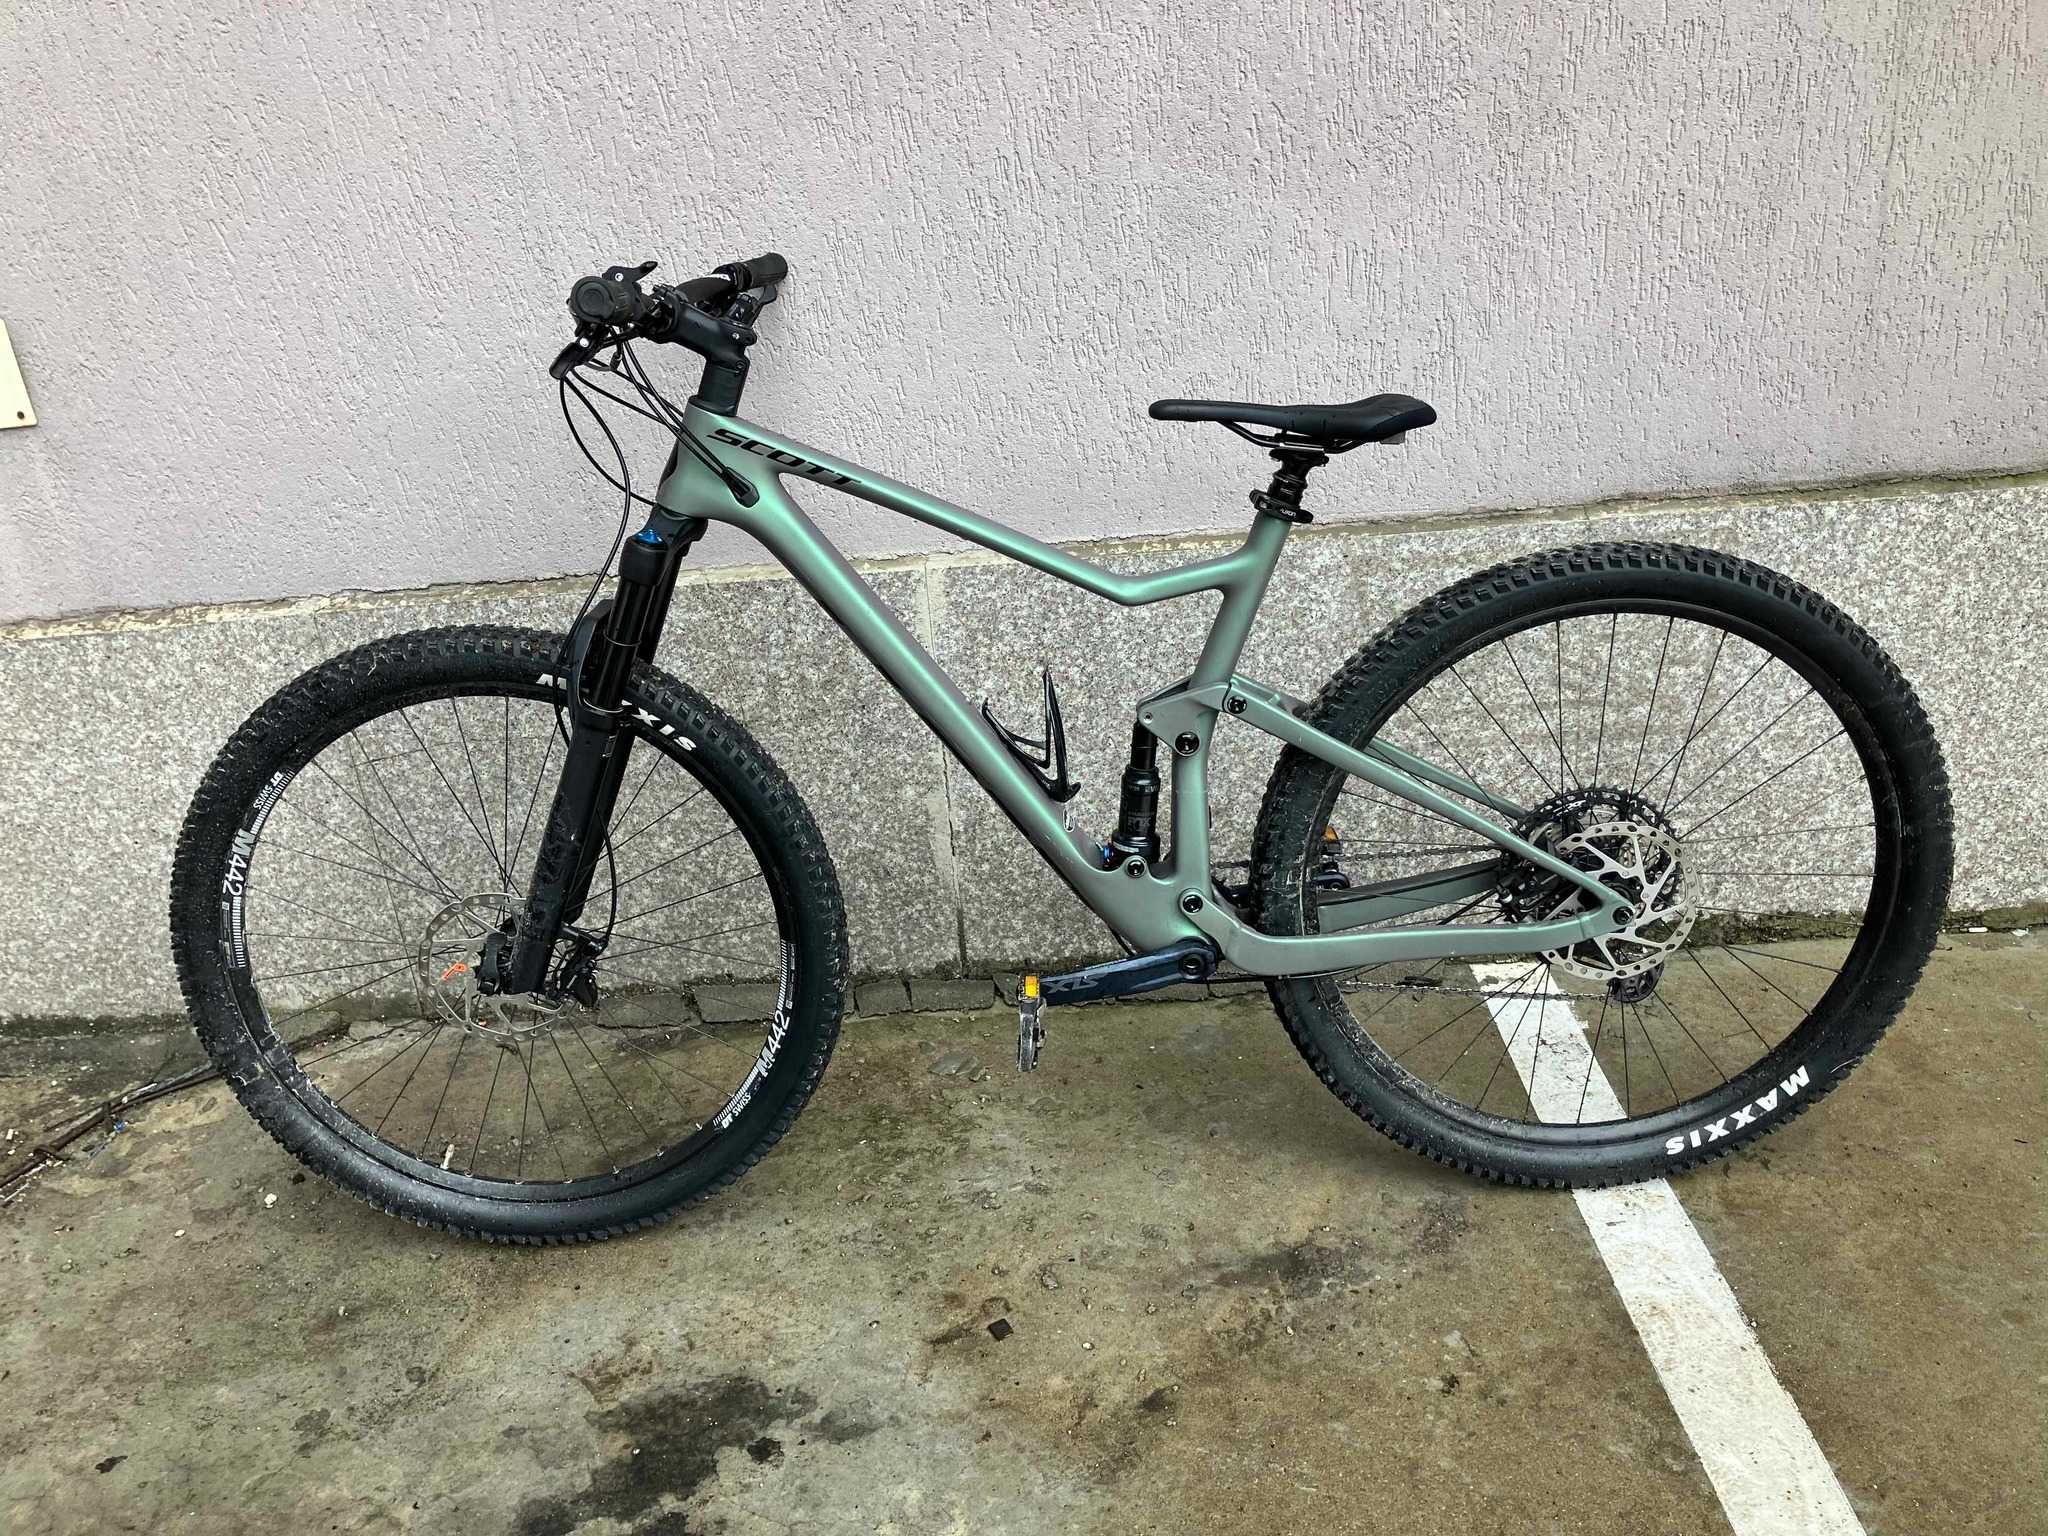 Планински велосипед Scott Spark 930 2021, размер "L" (50см)